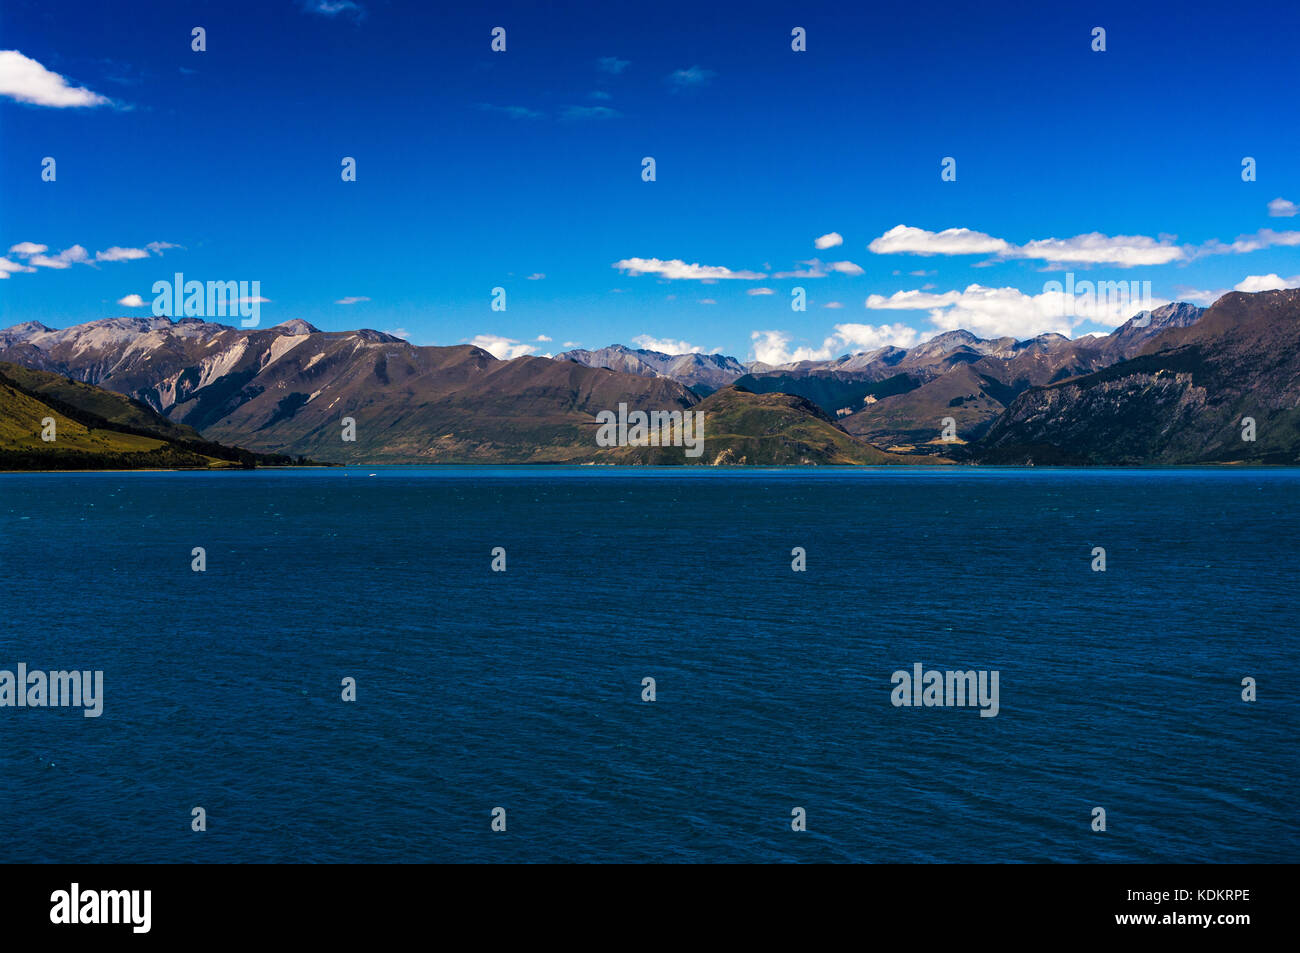 Il collo, otago • Nuova Zelanda lago hāwea circa 125 chilometri quadrati di superficie, 35 km di lunghezza e 8 km di larghezza, lago hāwe Foto Stock